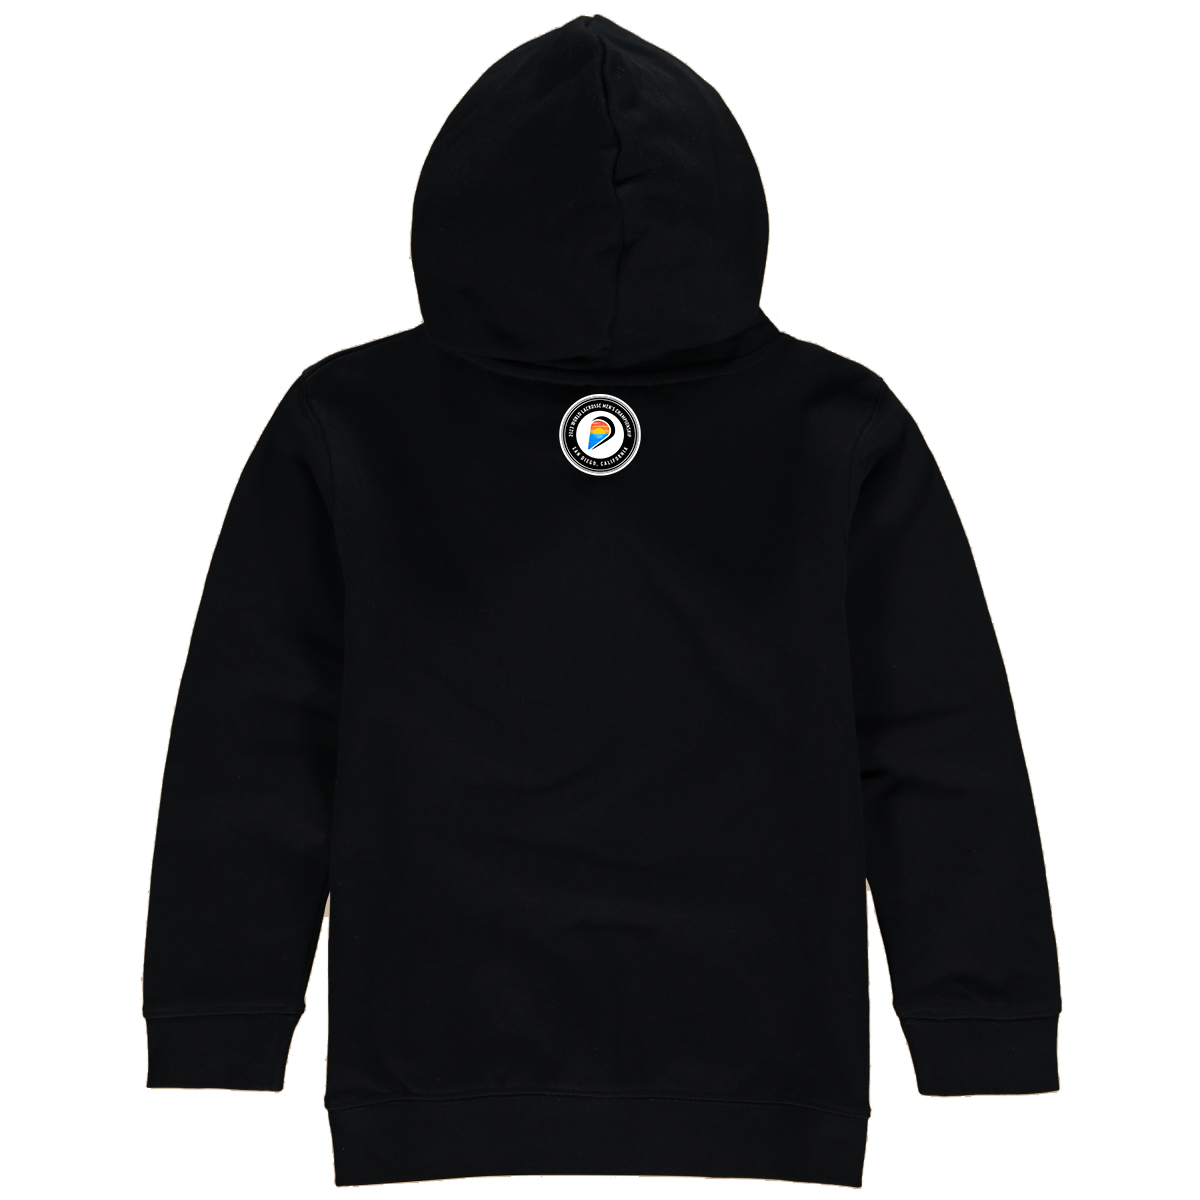 Latvia Premium Unisex Hoodie Sweatshirt Black